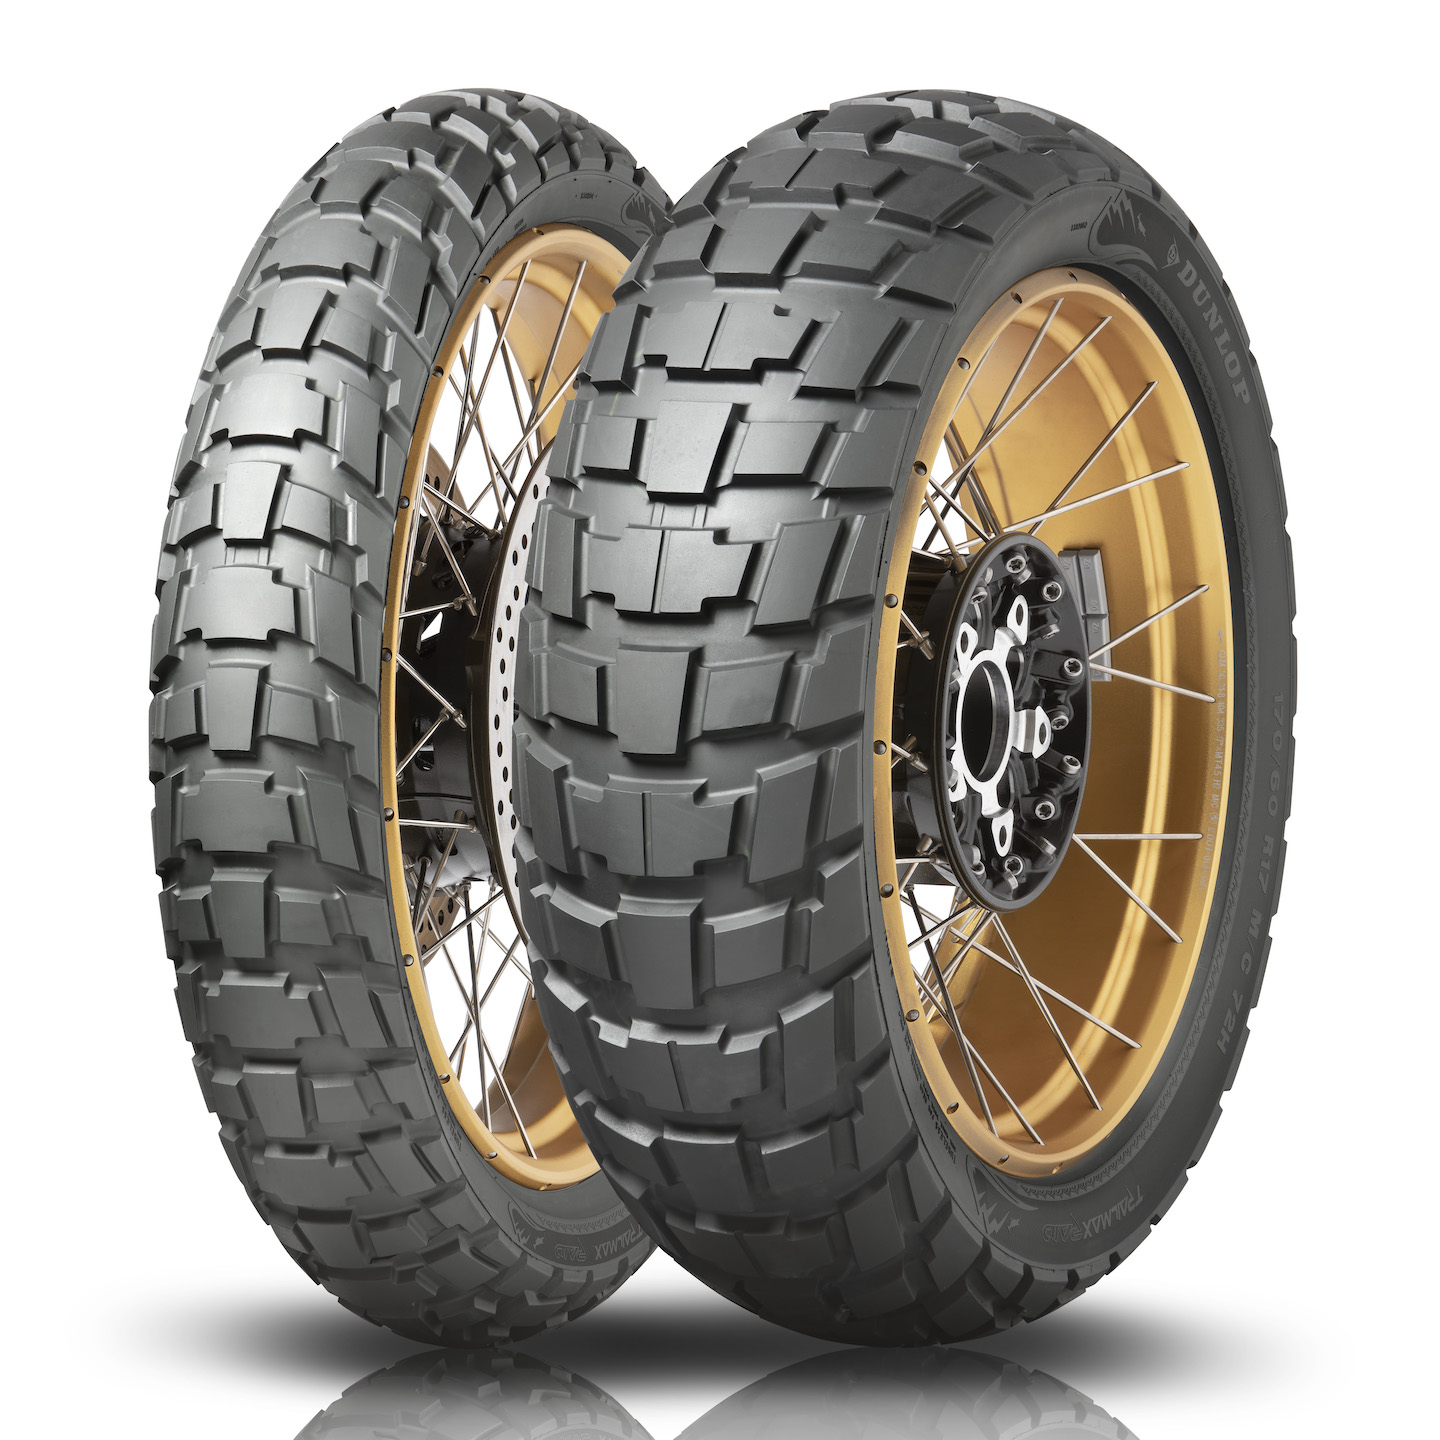 Gomme Nuove Dunlop 140/80 R18 70S TRAILMAX RAID M+S pneumatici nuovi Estivo